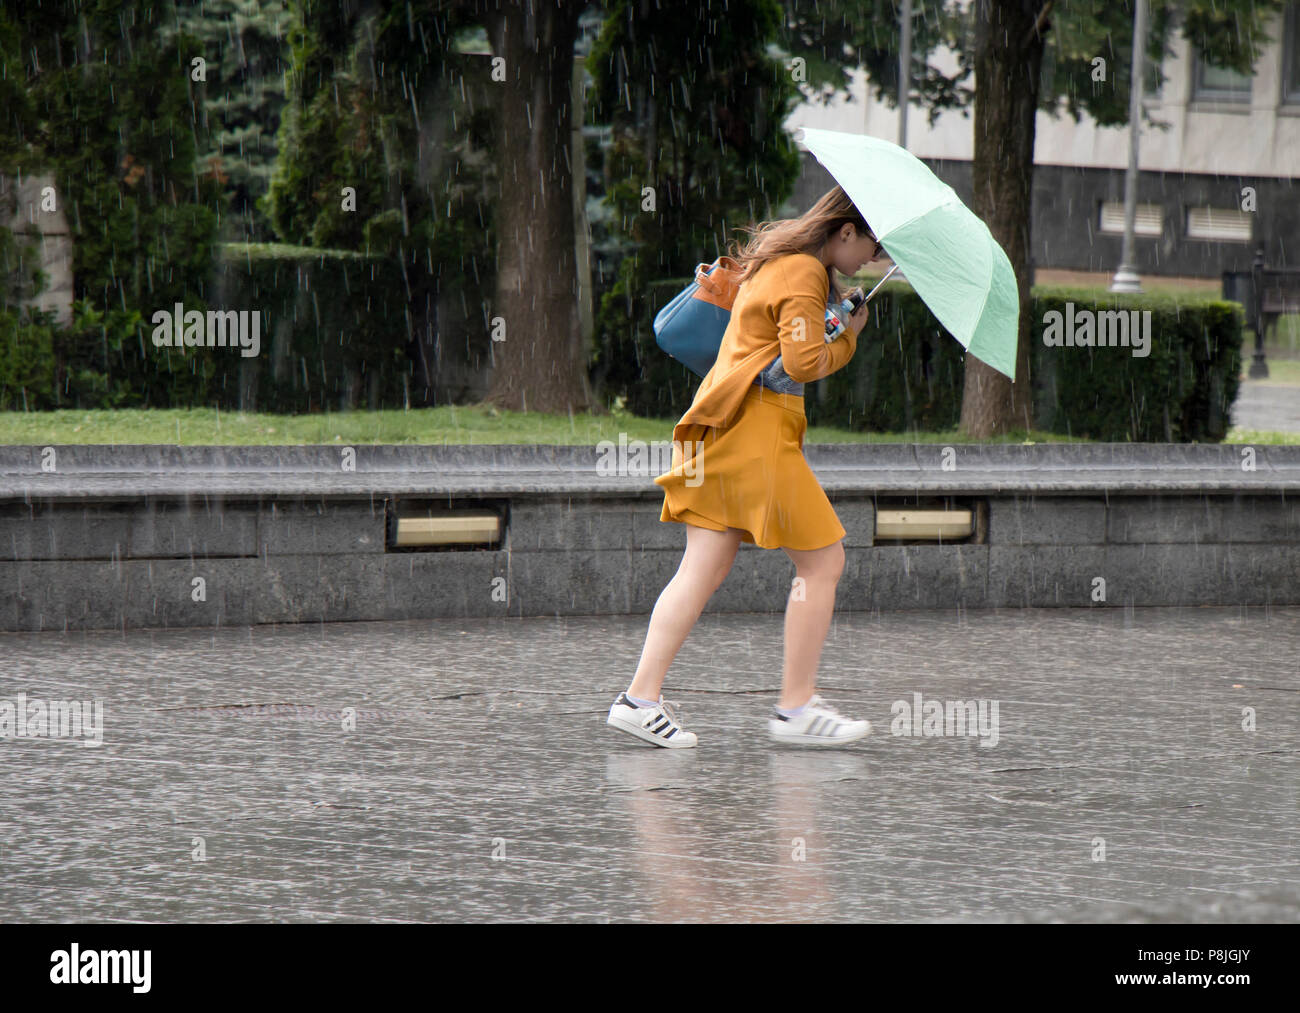 Belgrad, Serbien - Juni 14, 2018: Eine junge Frau unter dem Dach in der plötzlichen schweren und windigen Frühjahr Regen in der Stadt Park läuft, hält ein Bott Stockfoto